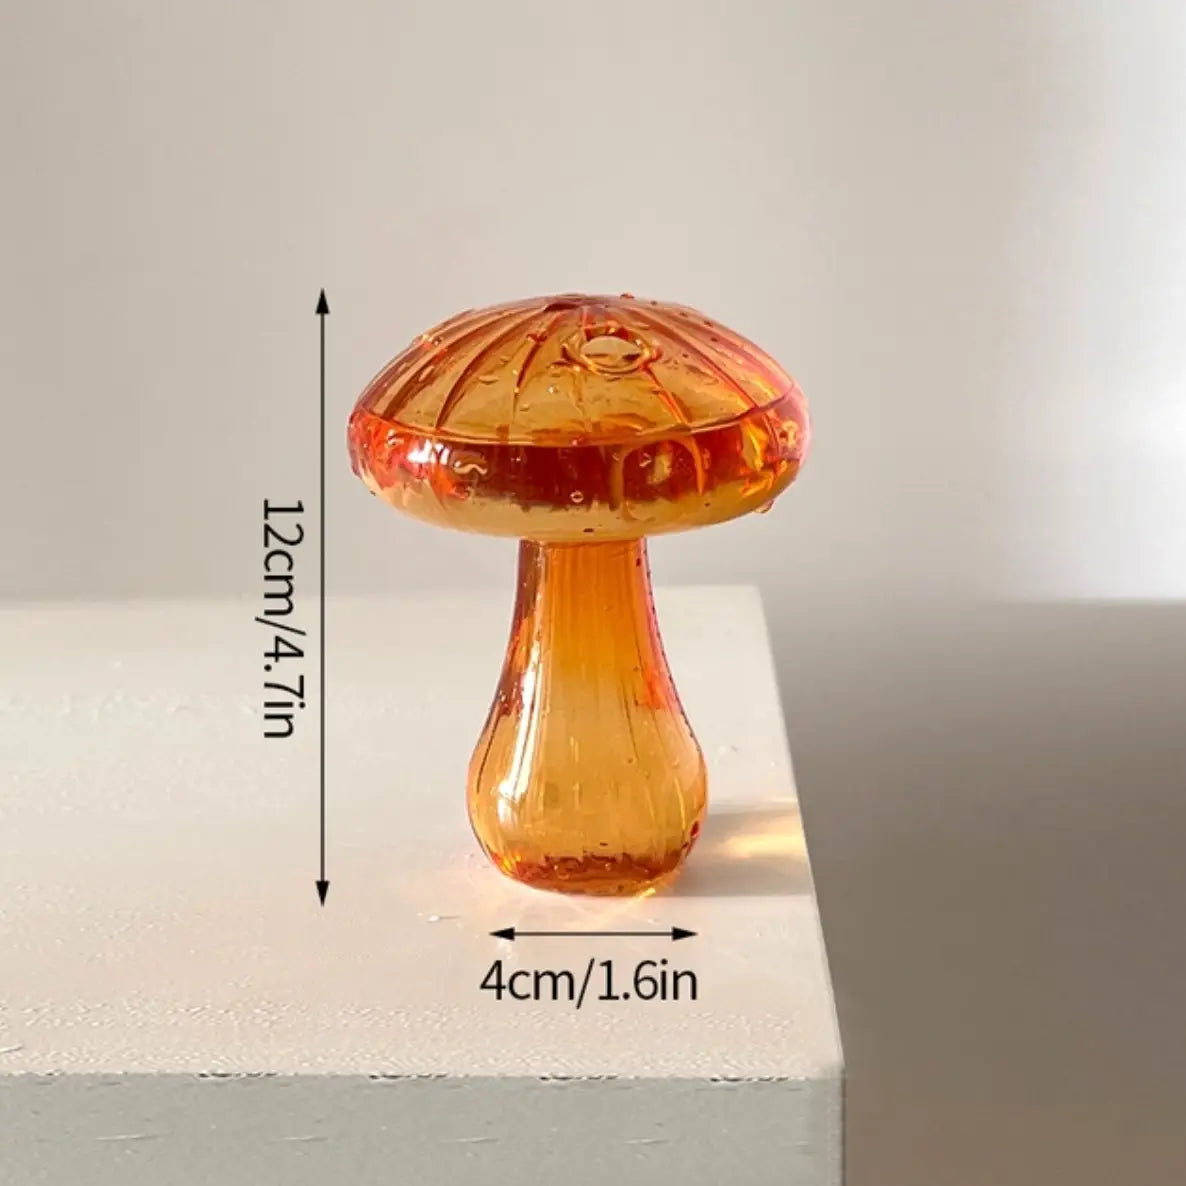 Bud Vase - Coloured Glass Mushroom